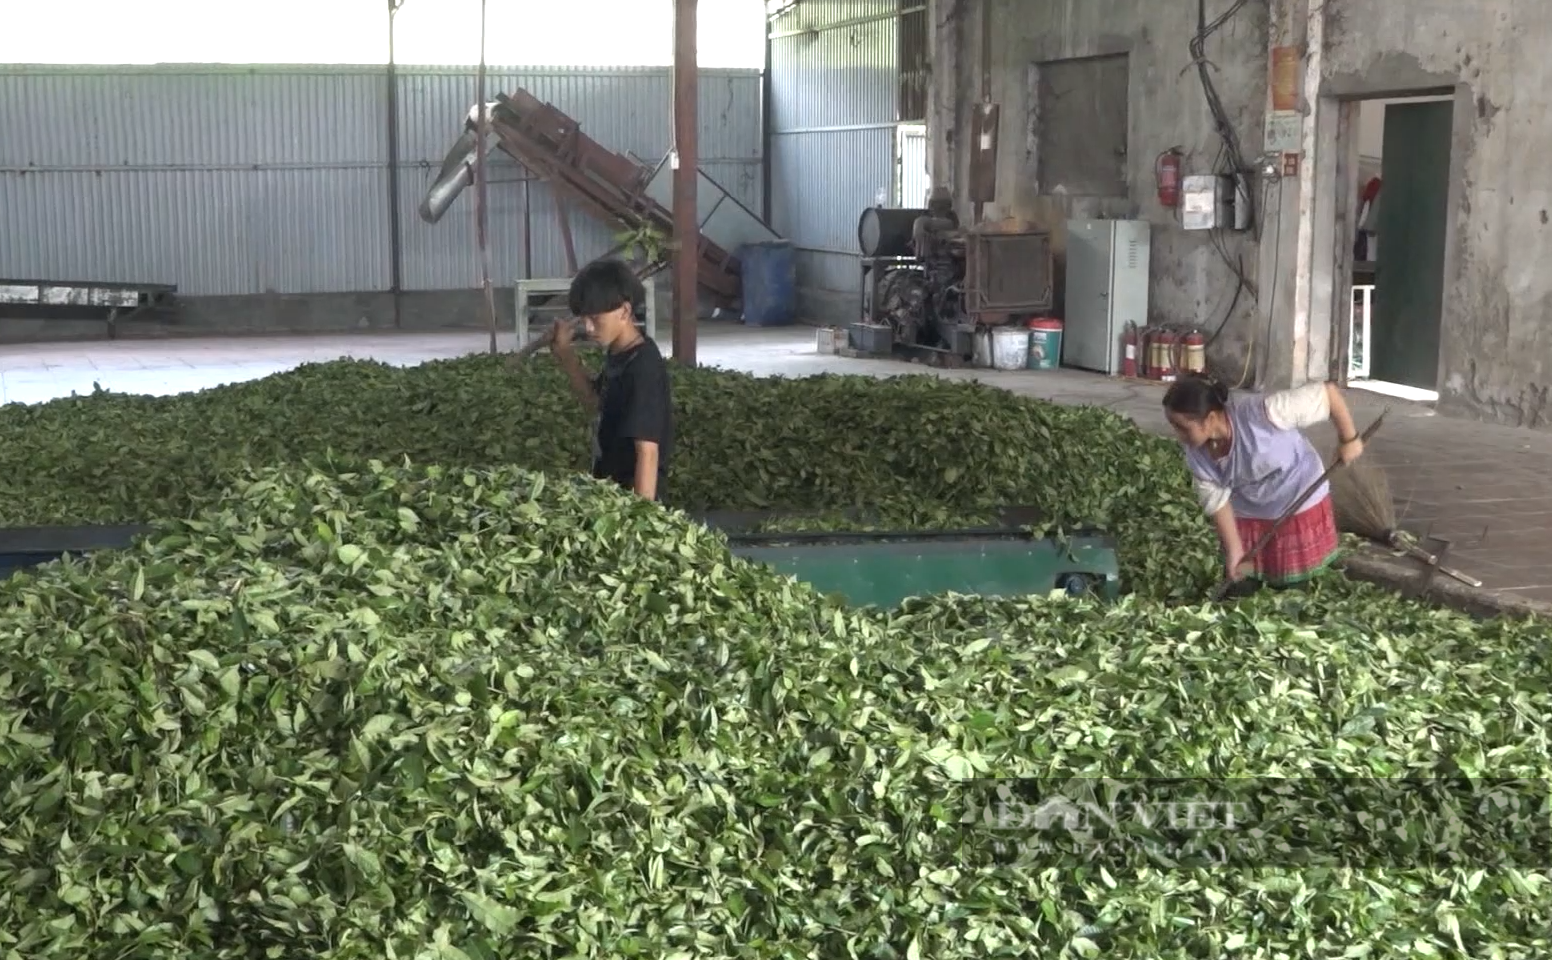 Nhờ cách làm này, nông dân huyện Tam Đường ở Lai Châu có thêm việc làm, thu nhập tăng - Ảnh 6.